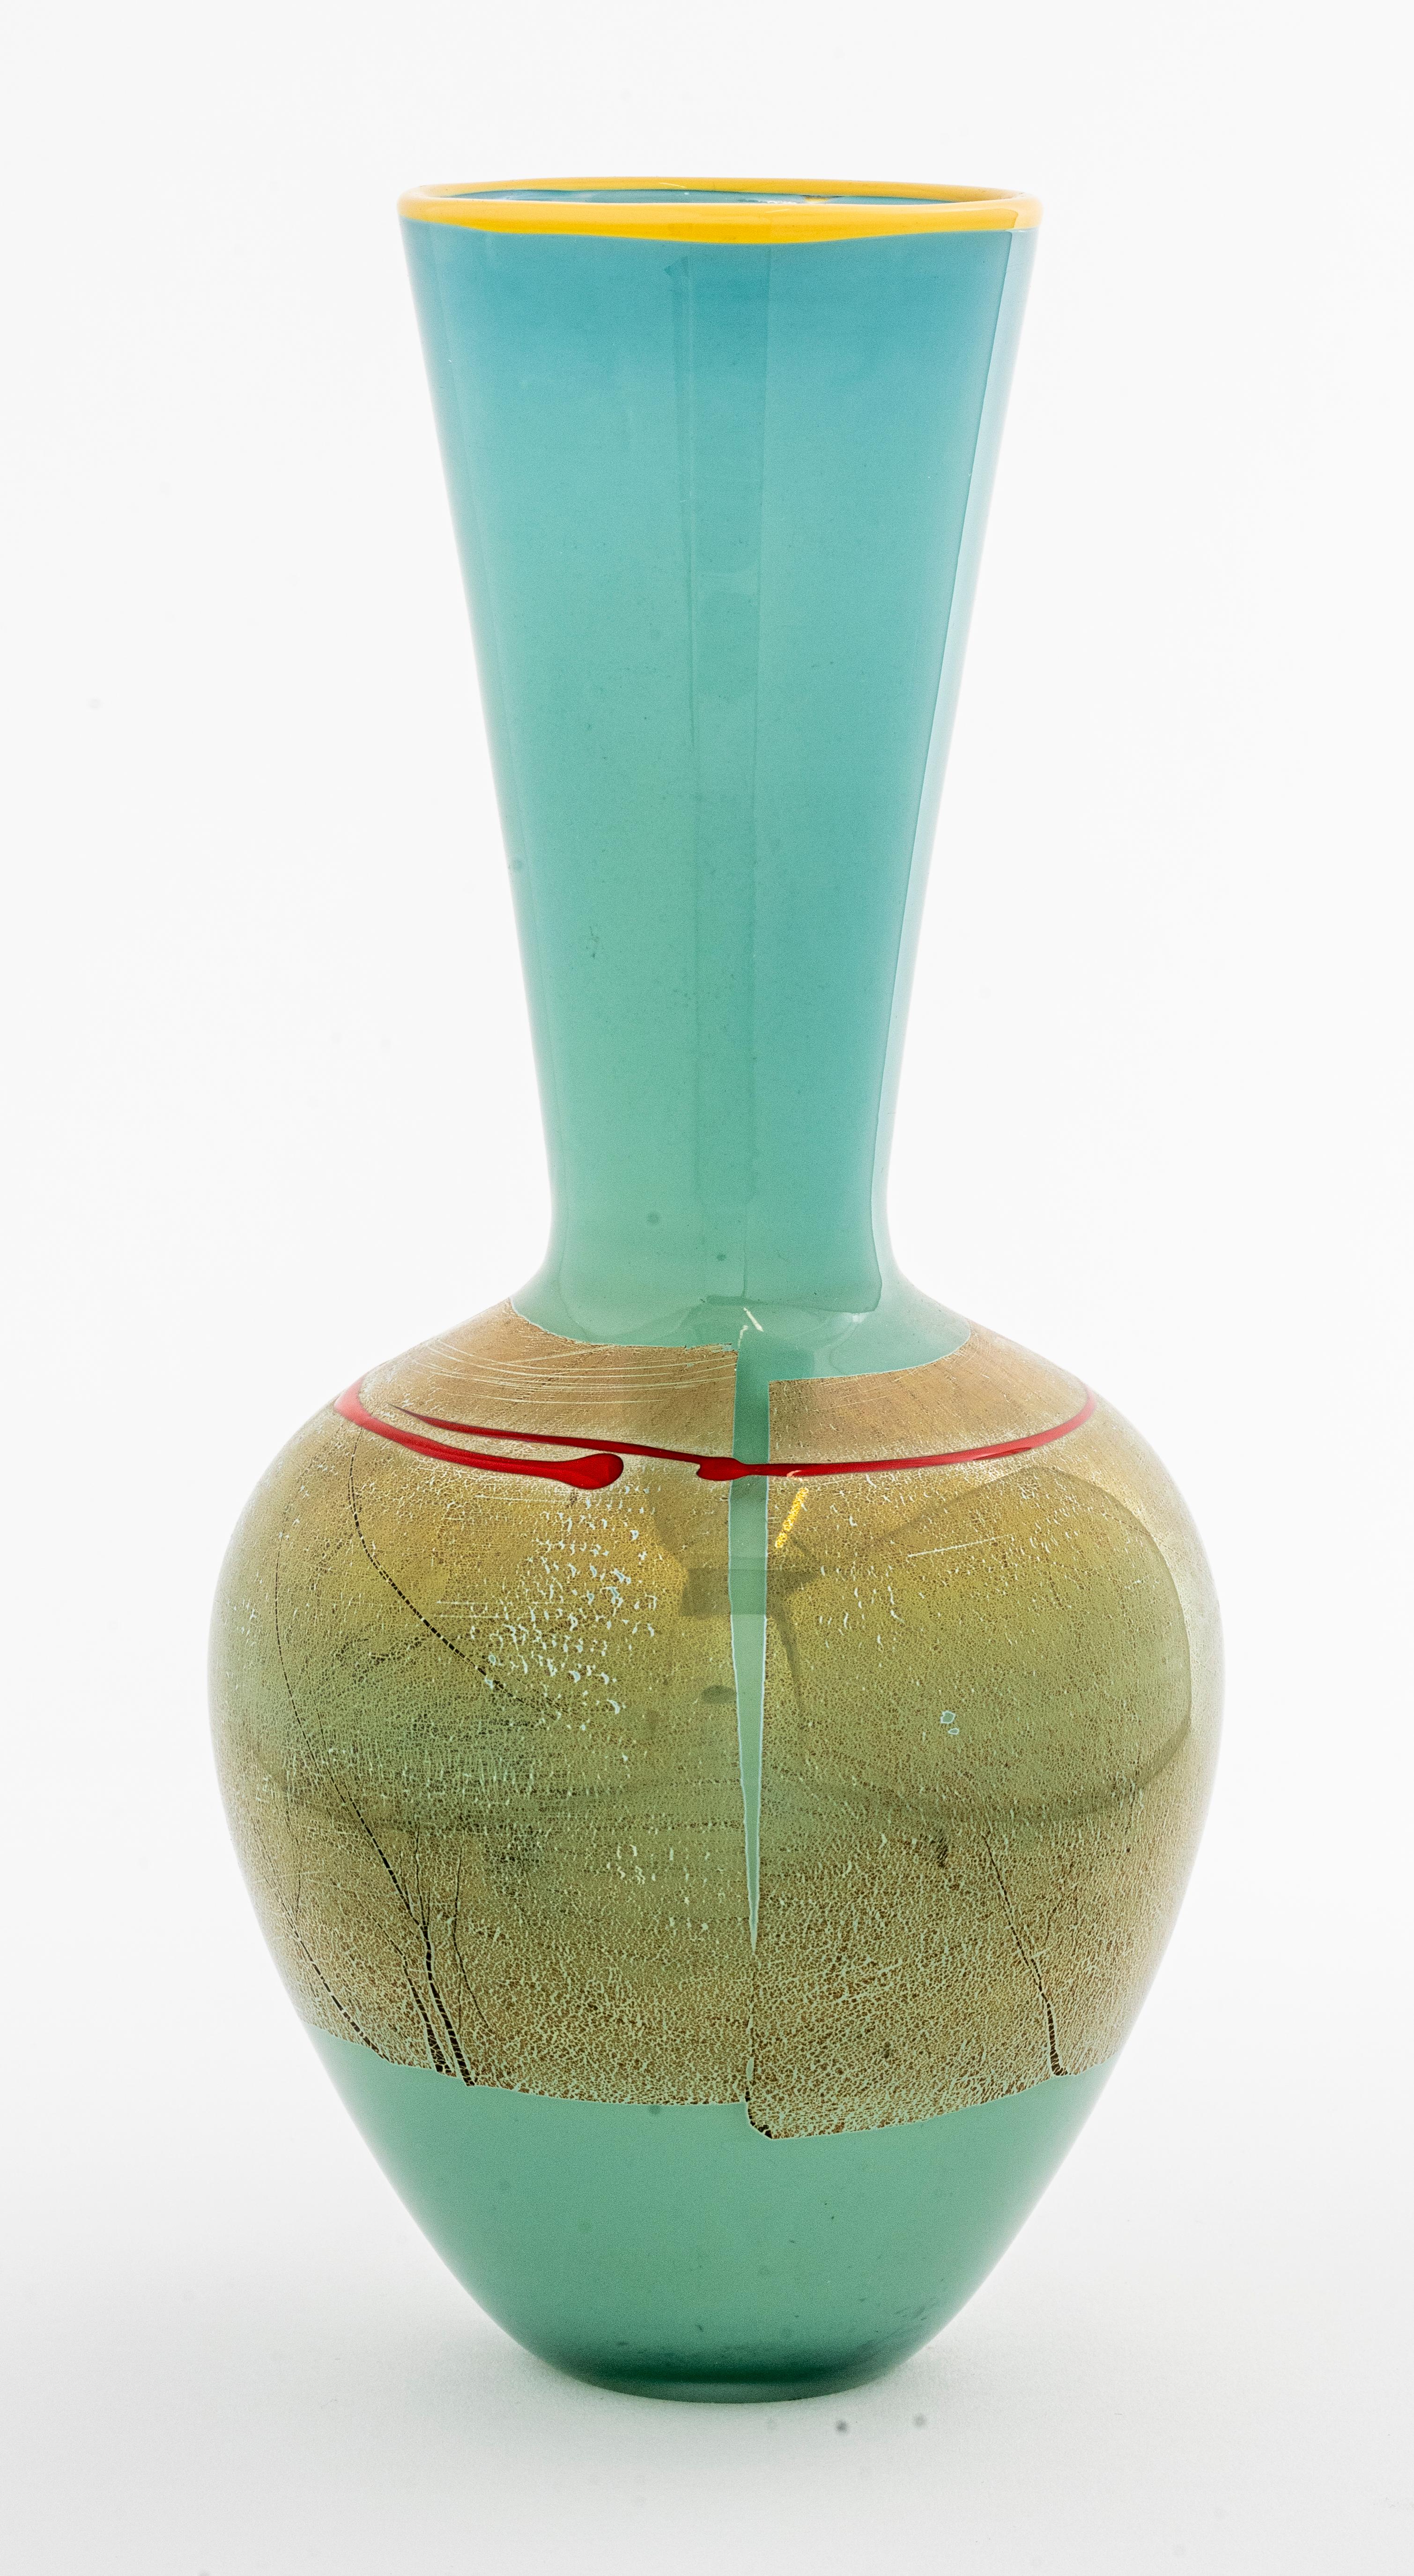 Modernistische Vase aus Kunstglas von Studio Paran, 2007, signiert und datiert.